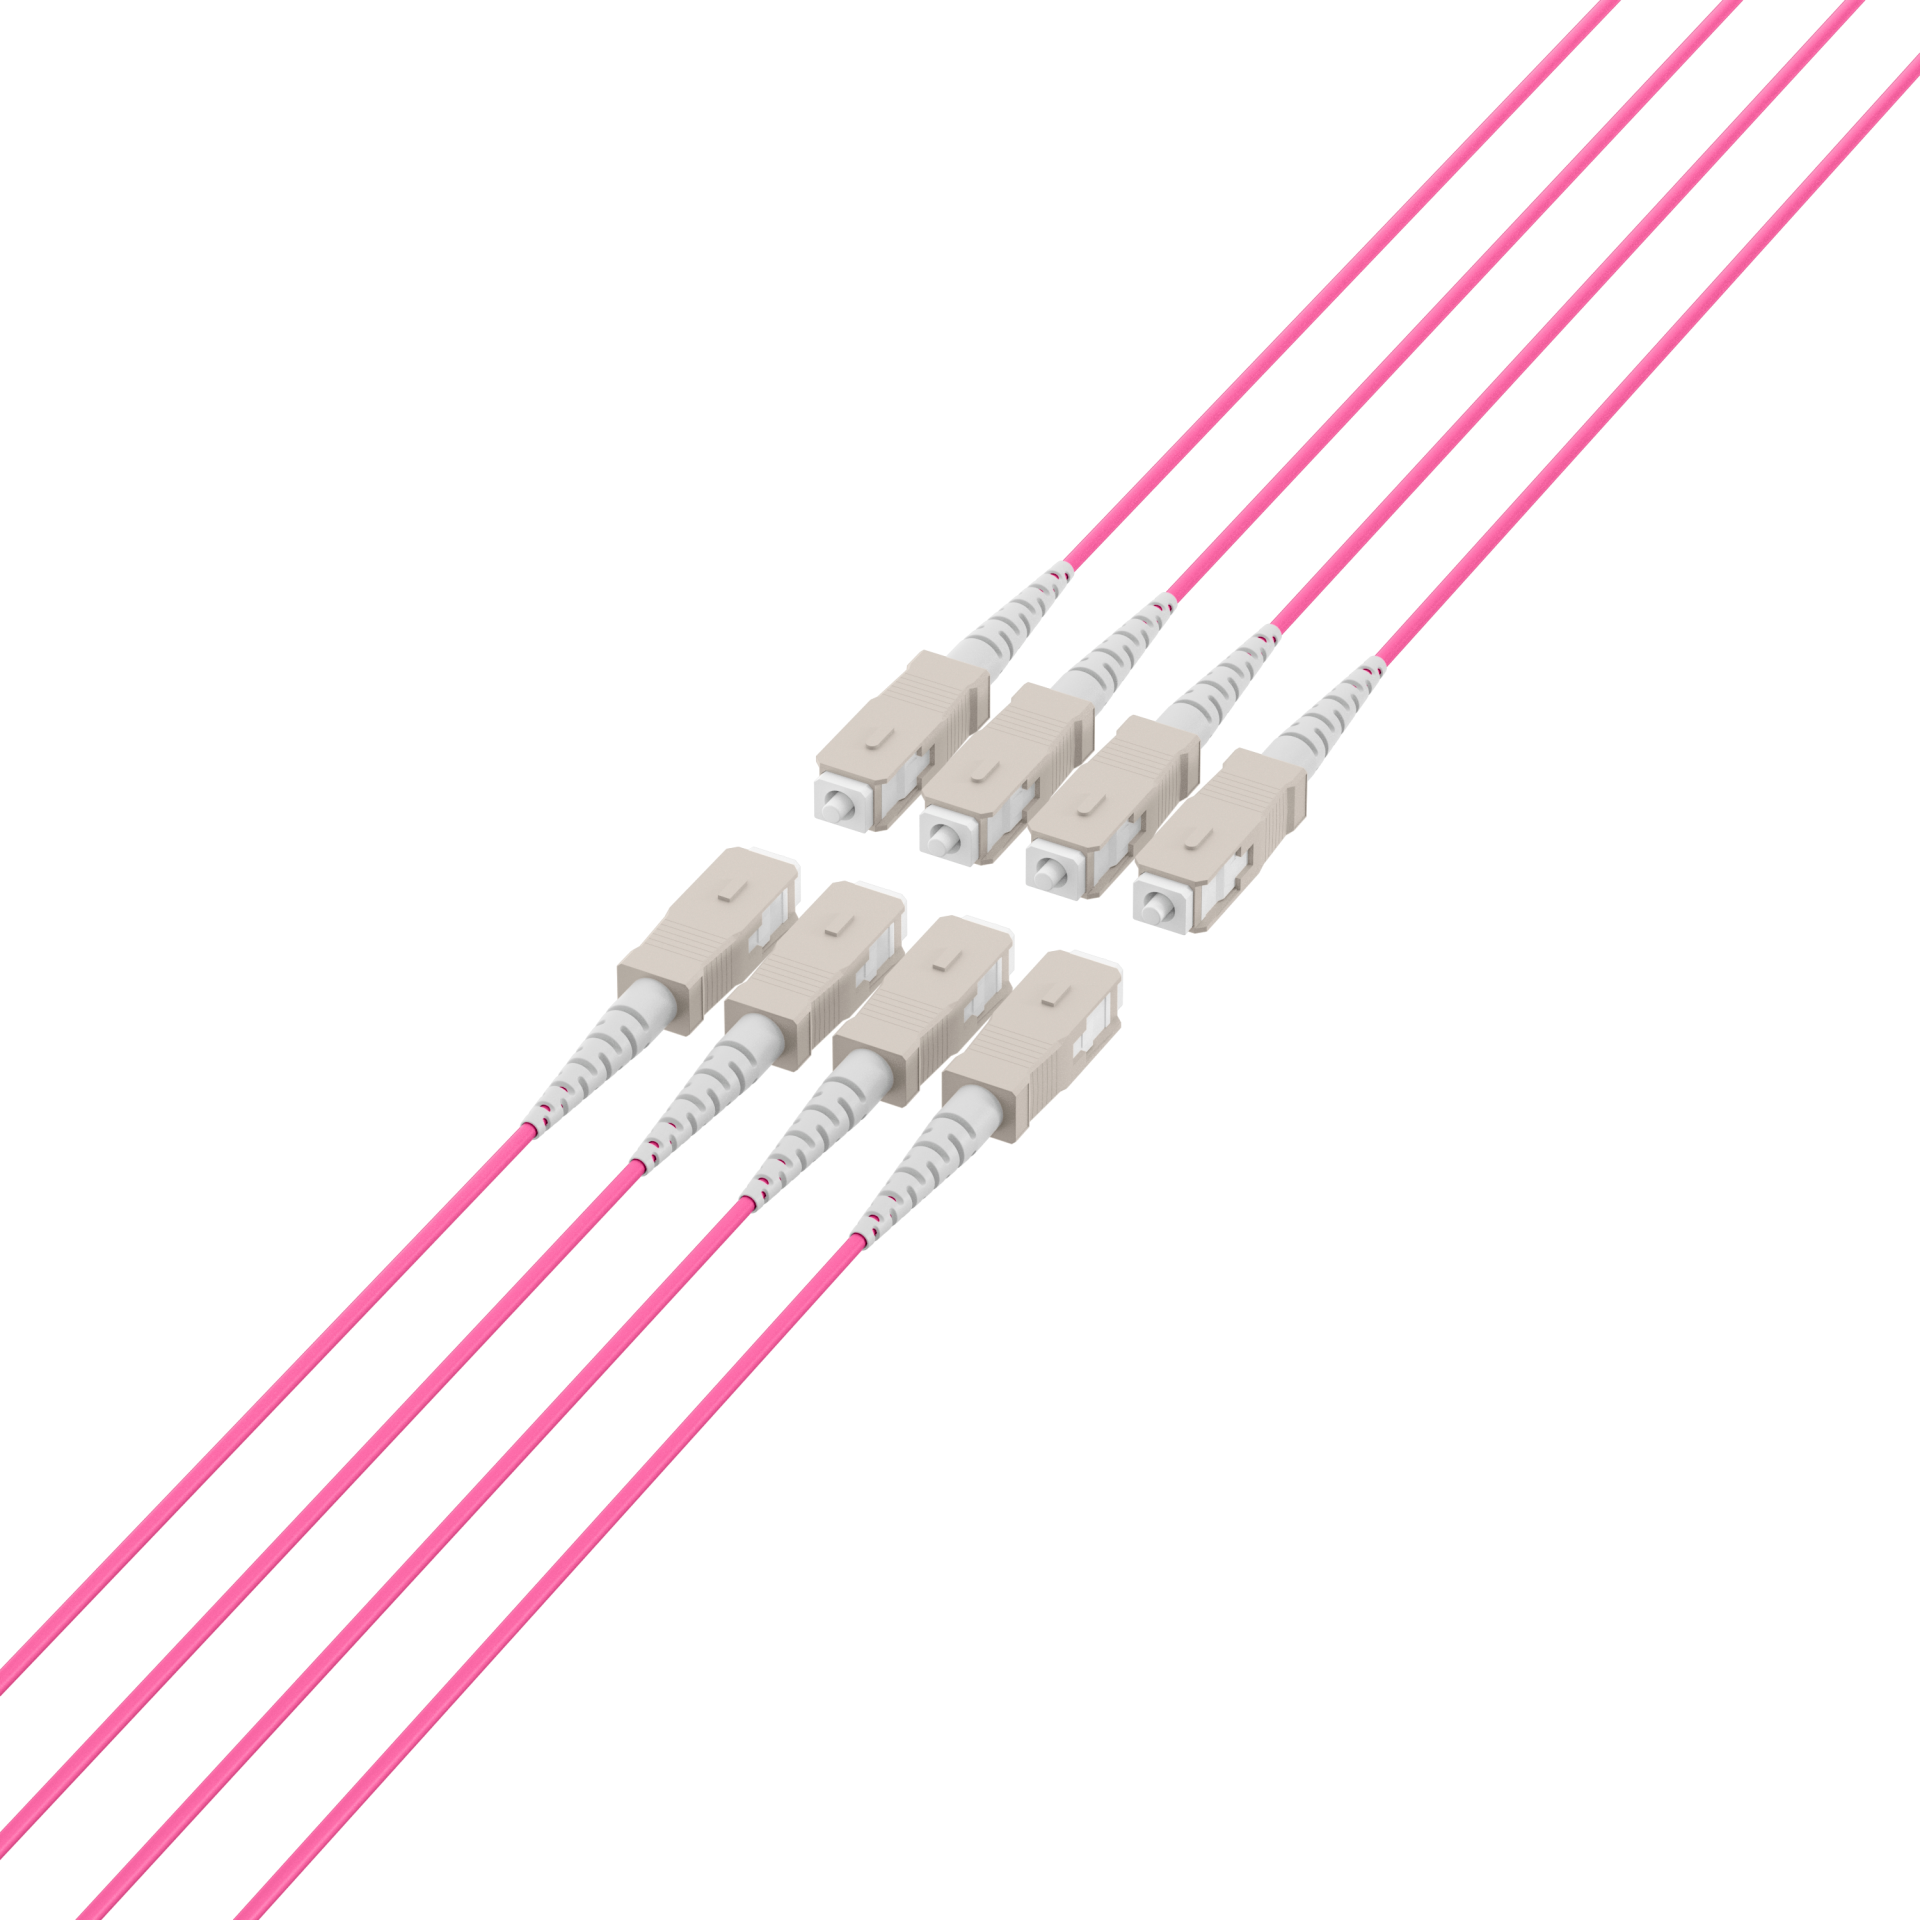 Trunk cable U-DQ(ZN)BH OM4 8G (1x8) SC-SC,190m Dca LSZH